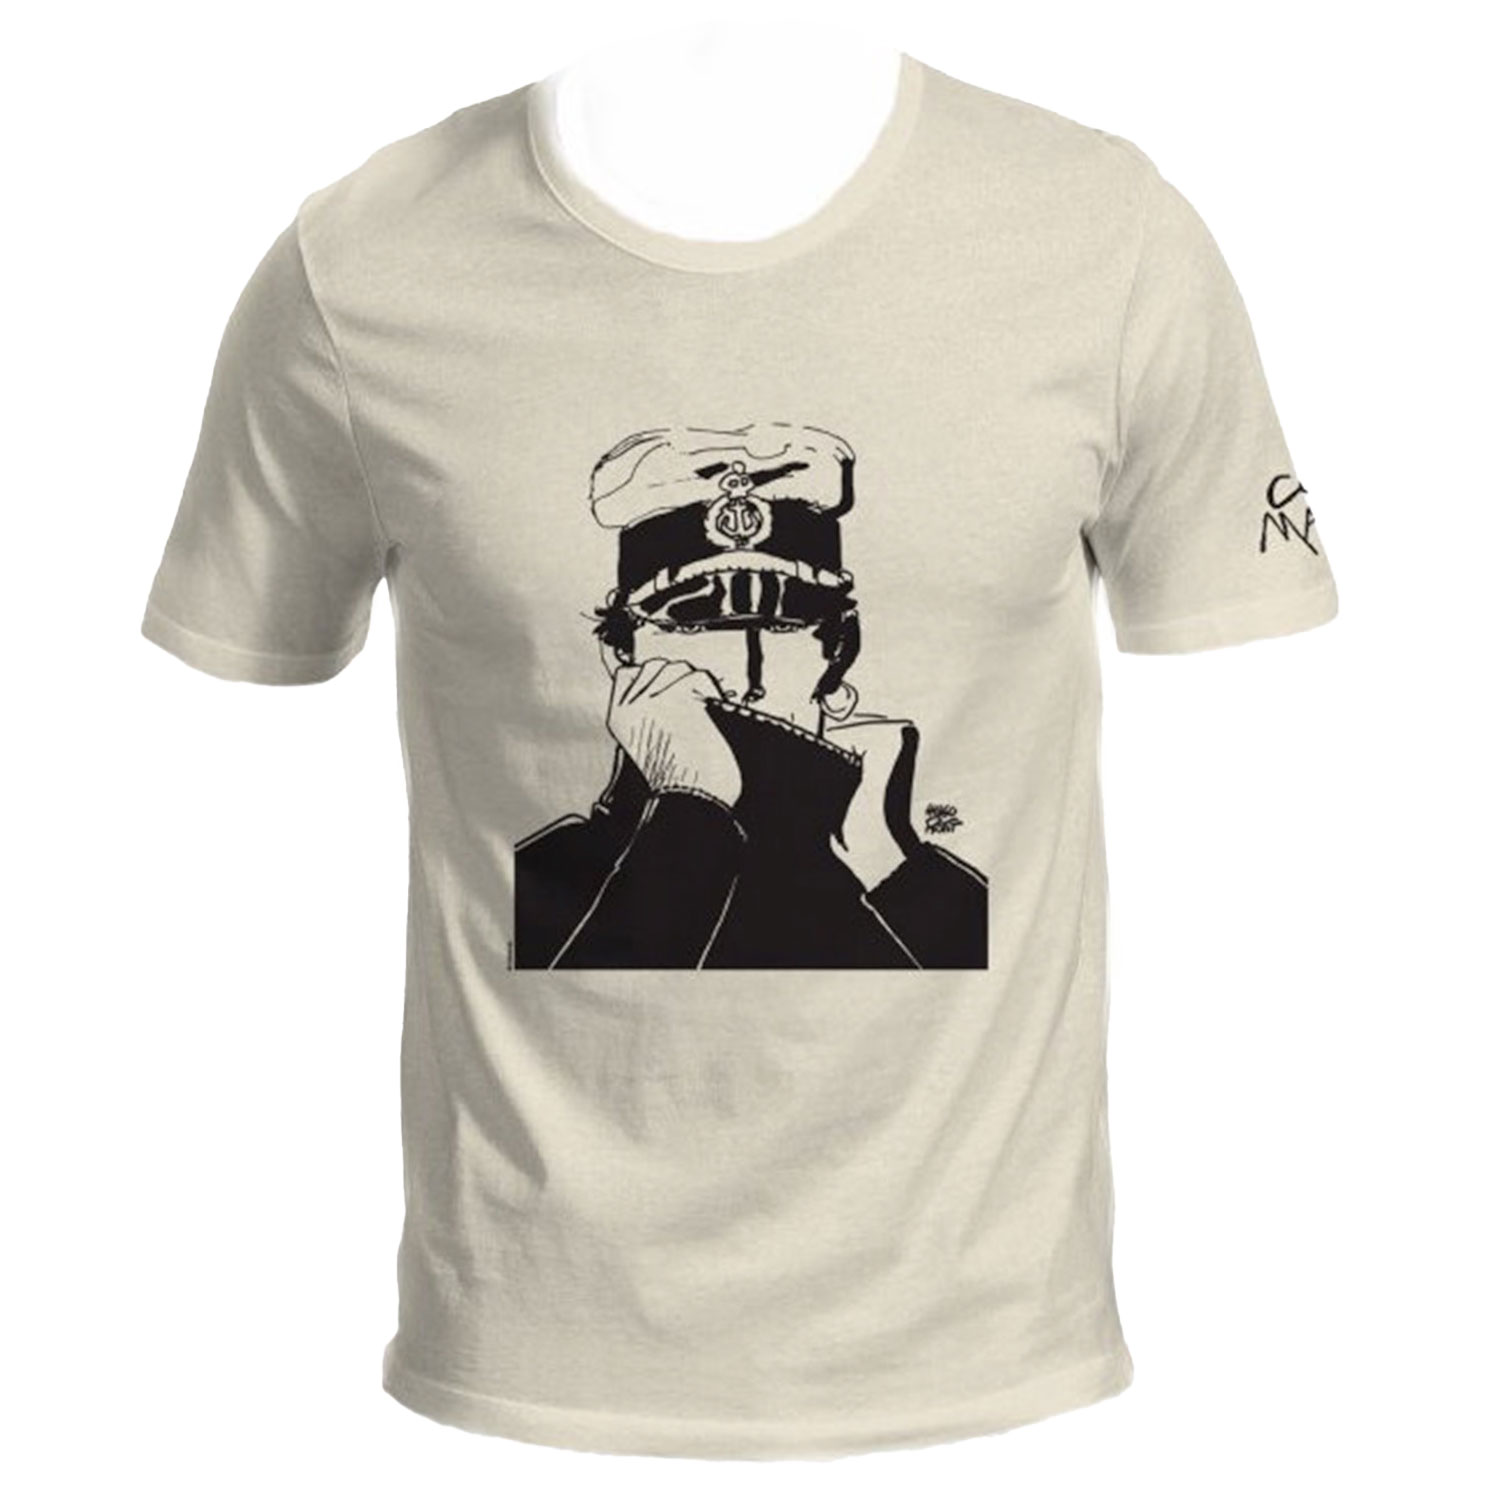 Hugo Pratt T-shirt : Corto Maltese , The sailor - Ecru - Size S